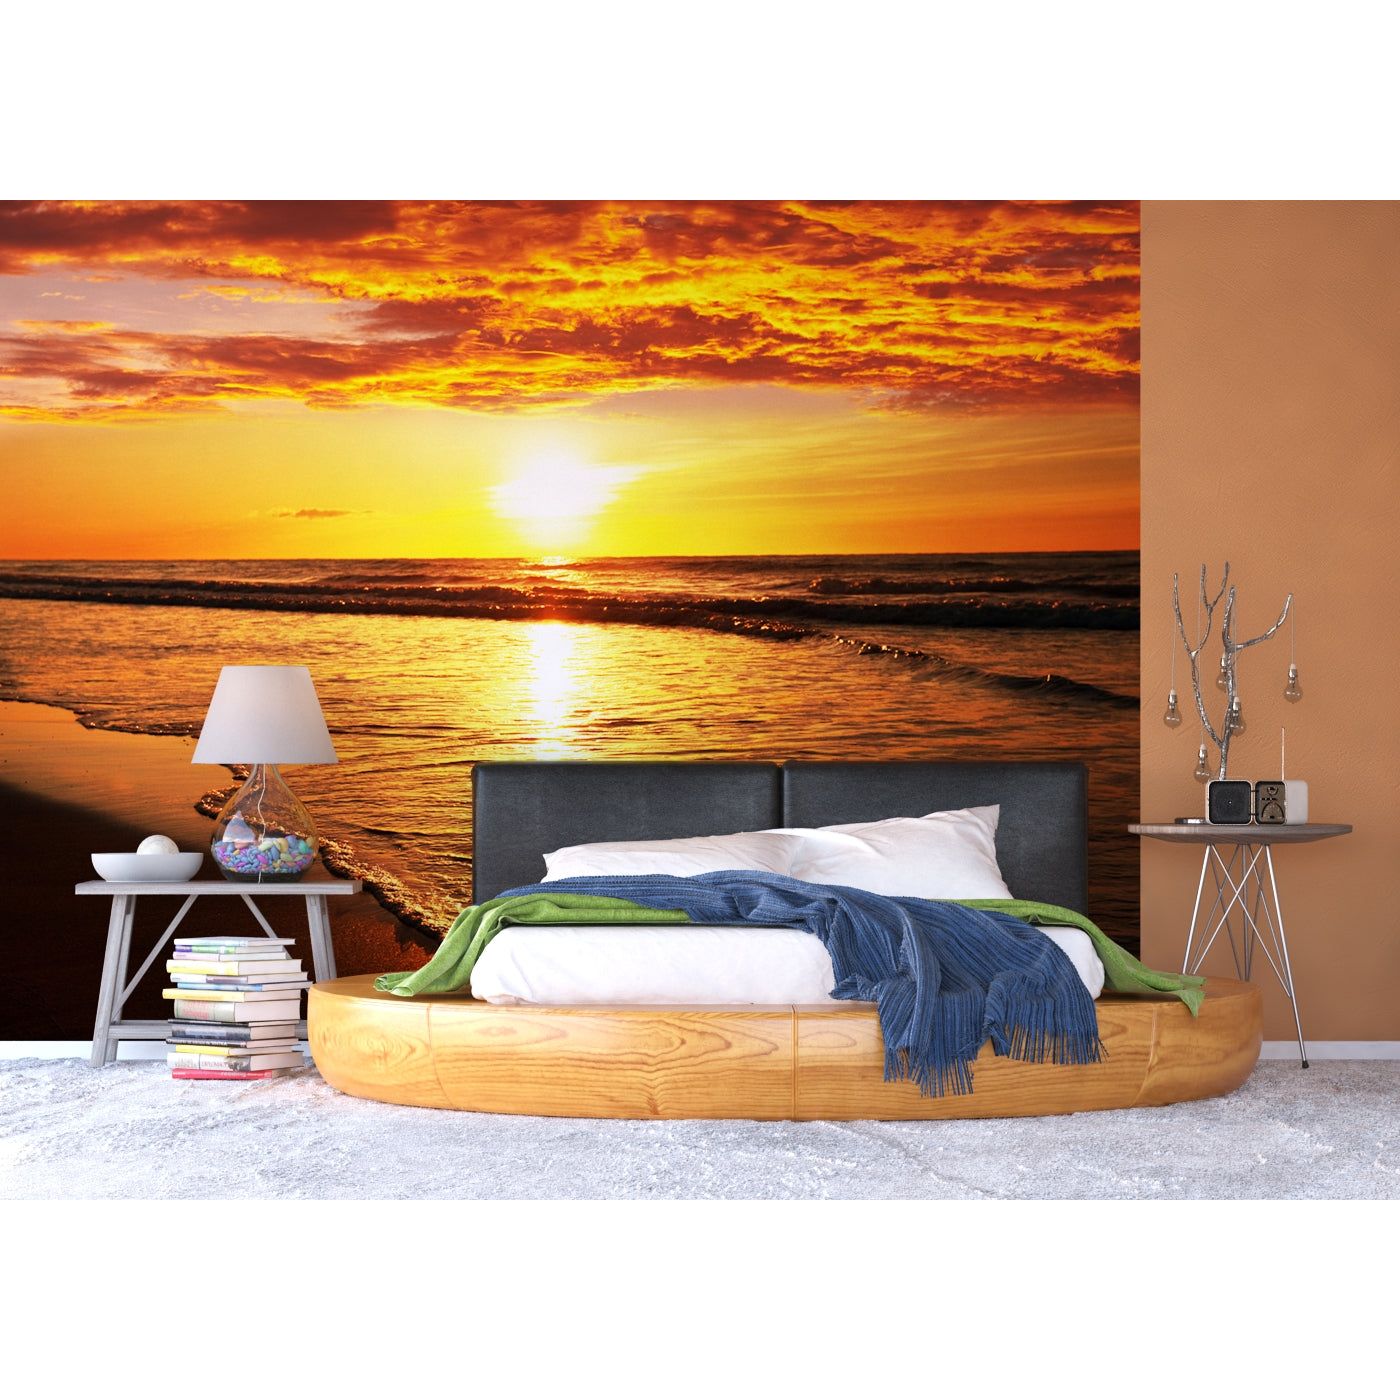 Sundown Splendor: Oceanic Sunset Wall Mural